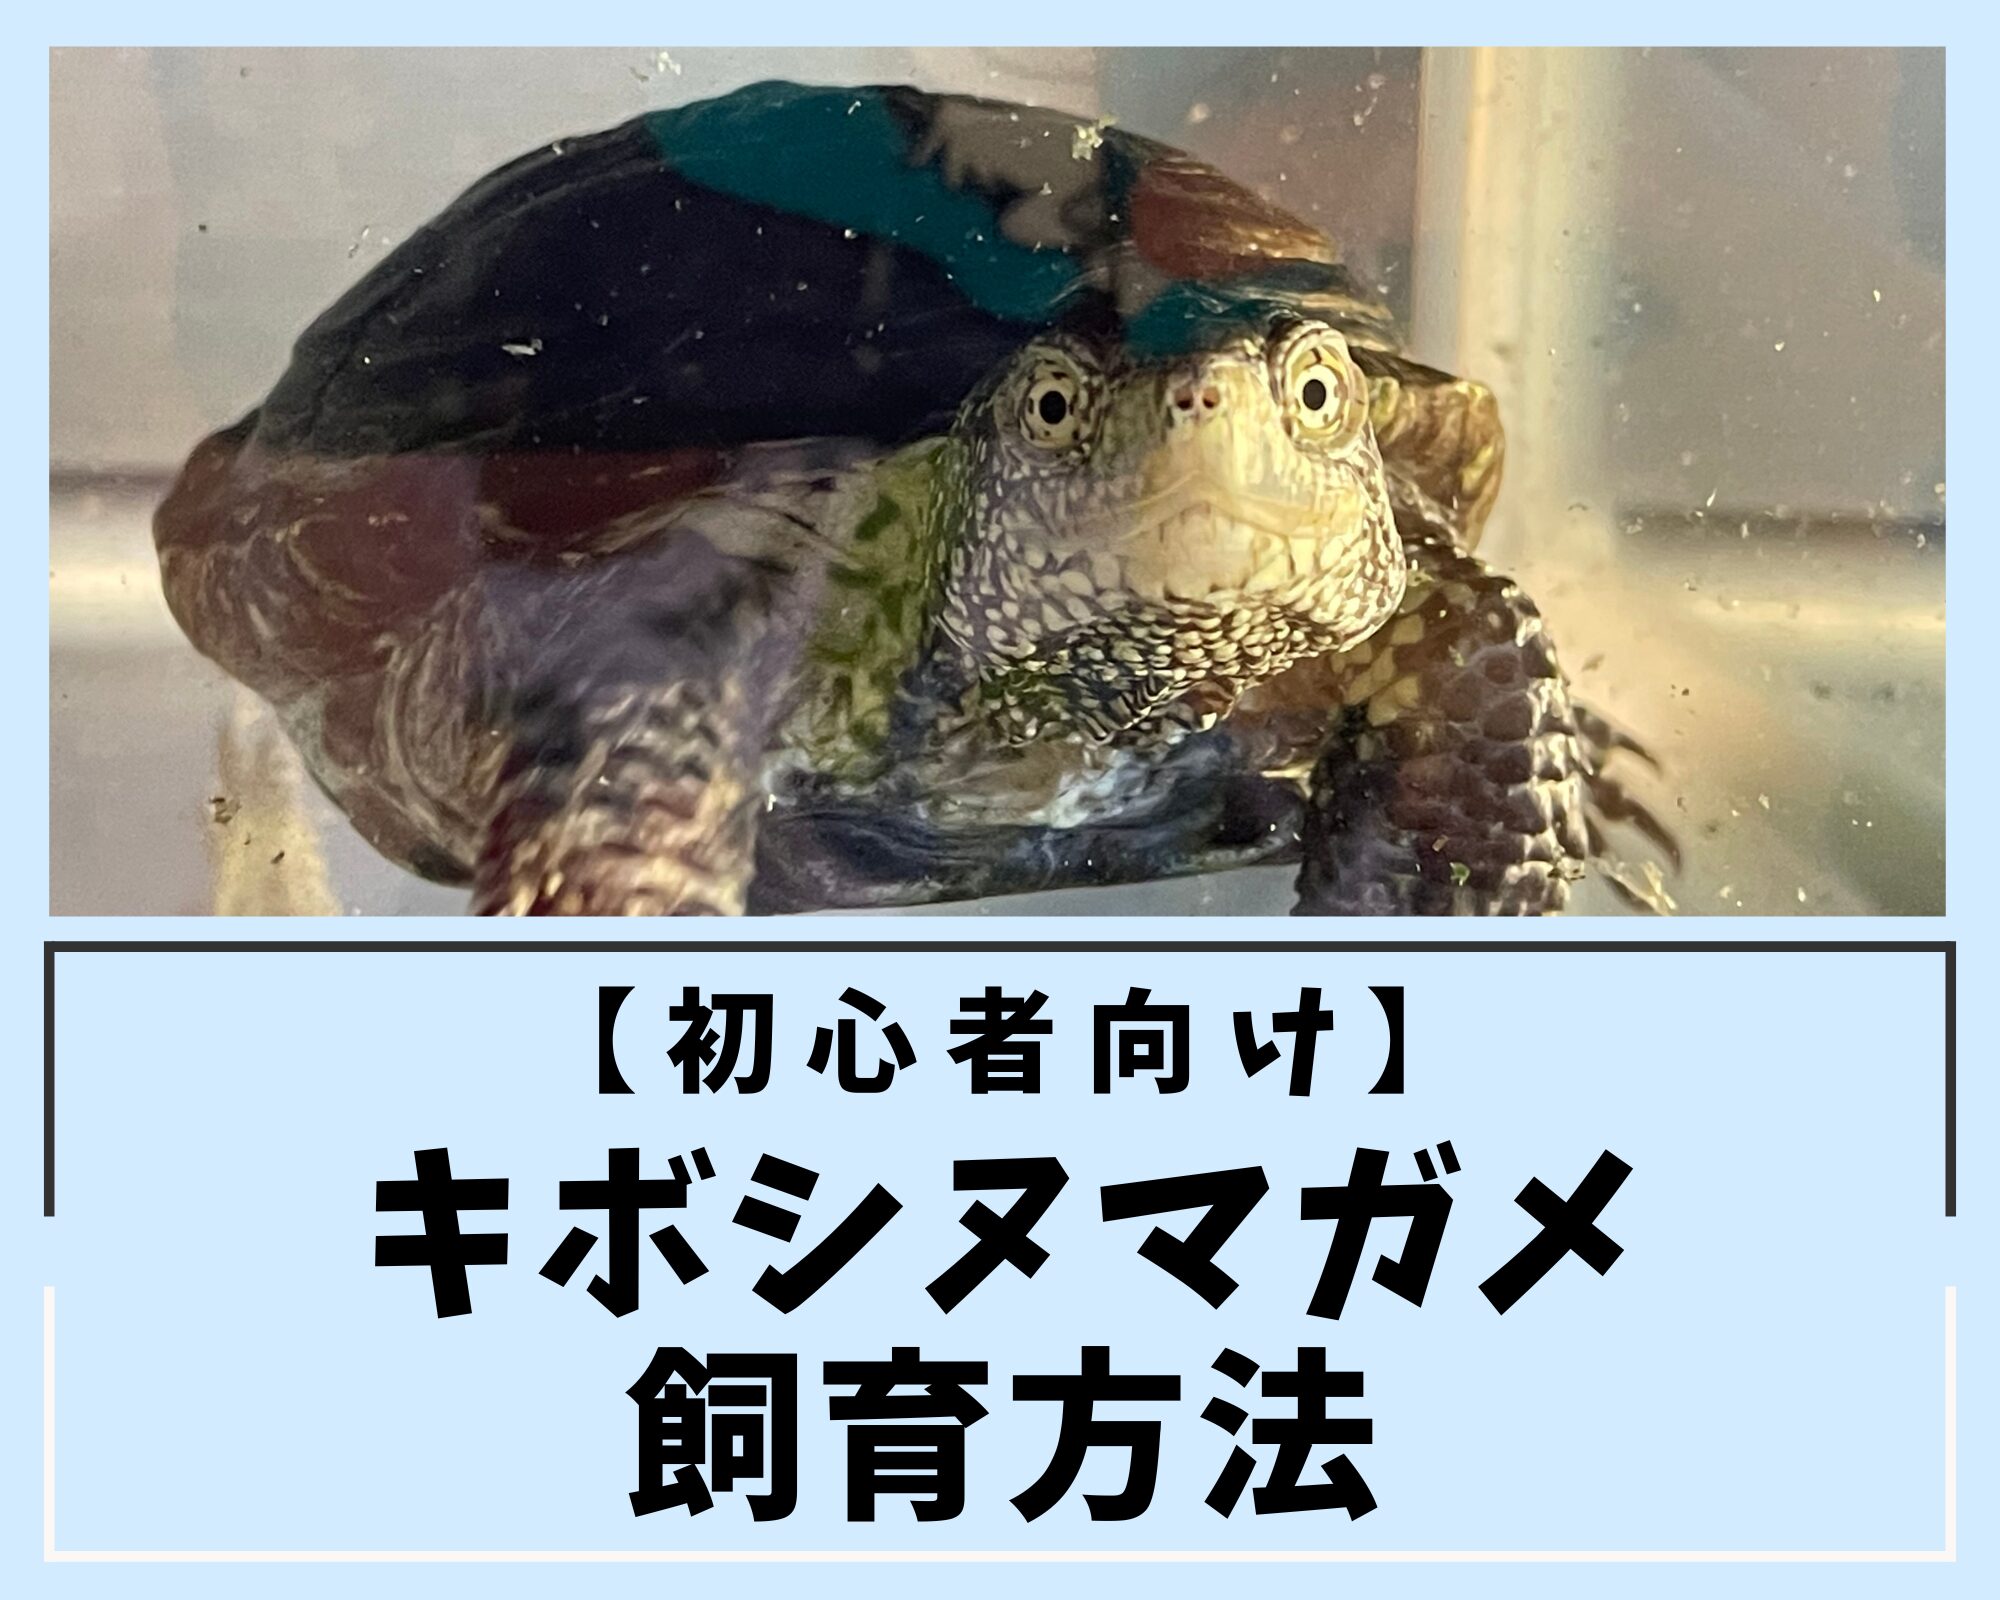 【初心者向け】キボシヌマガメ飼育方法